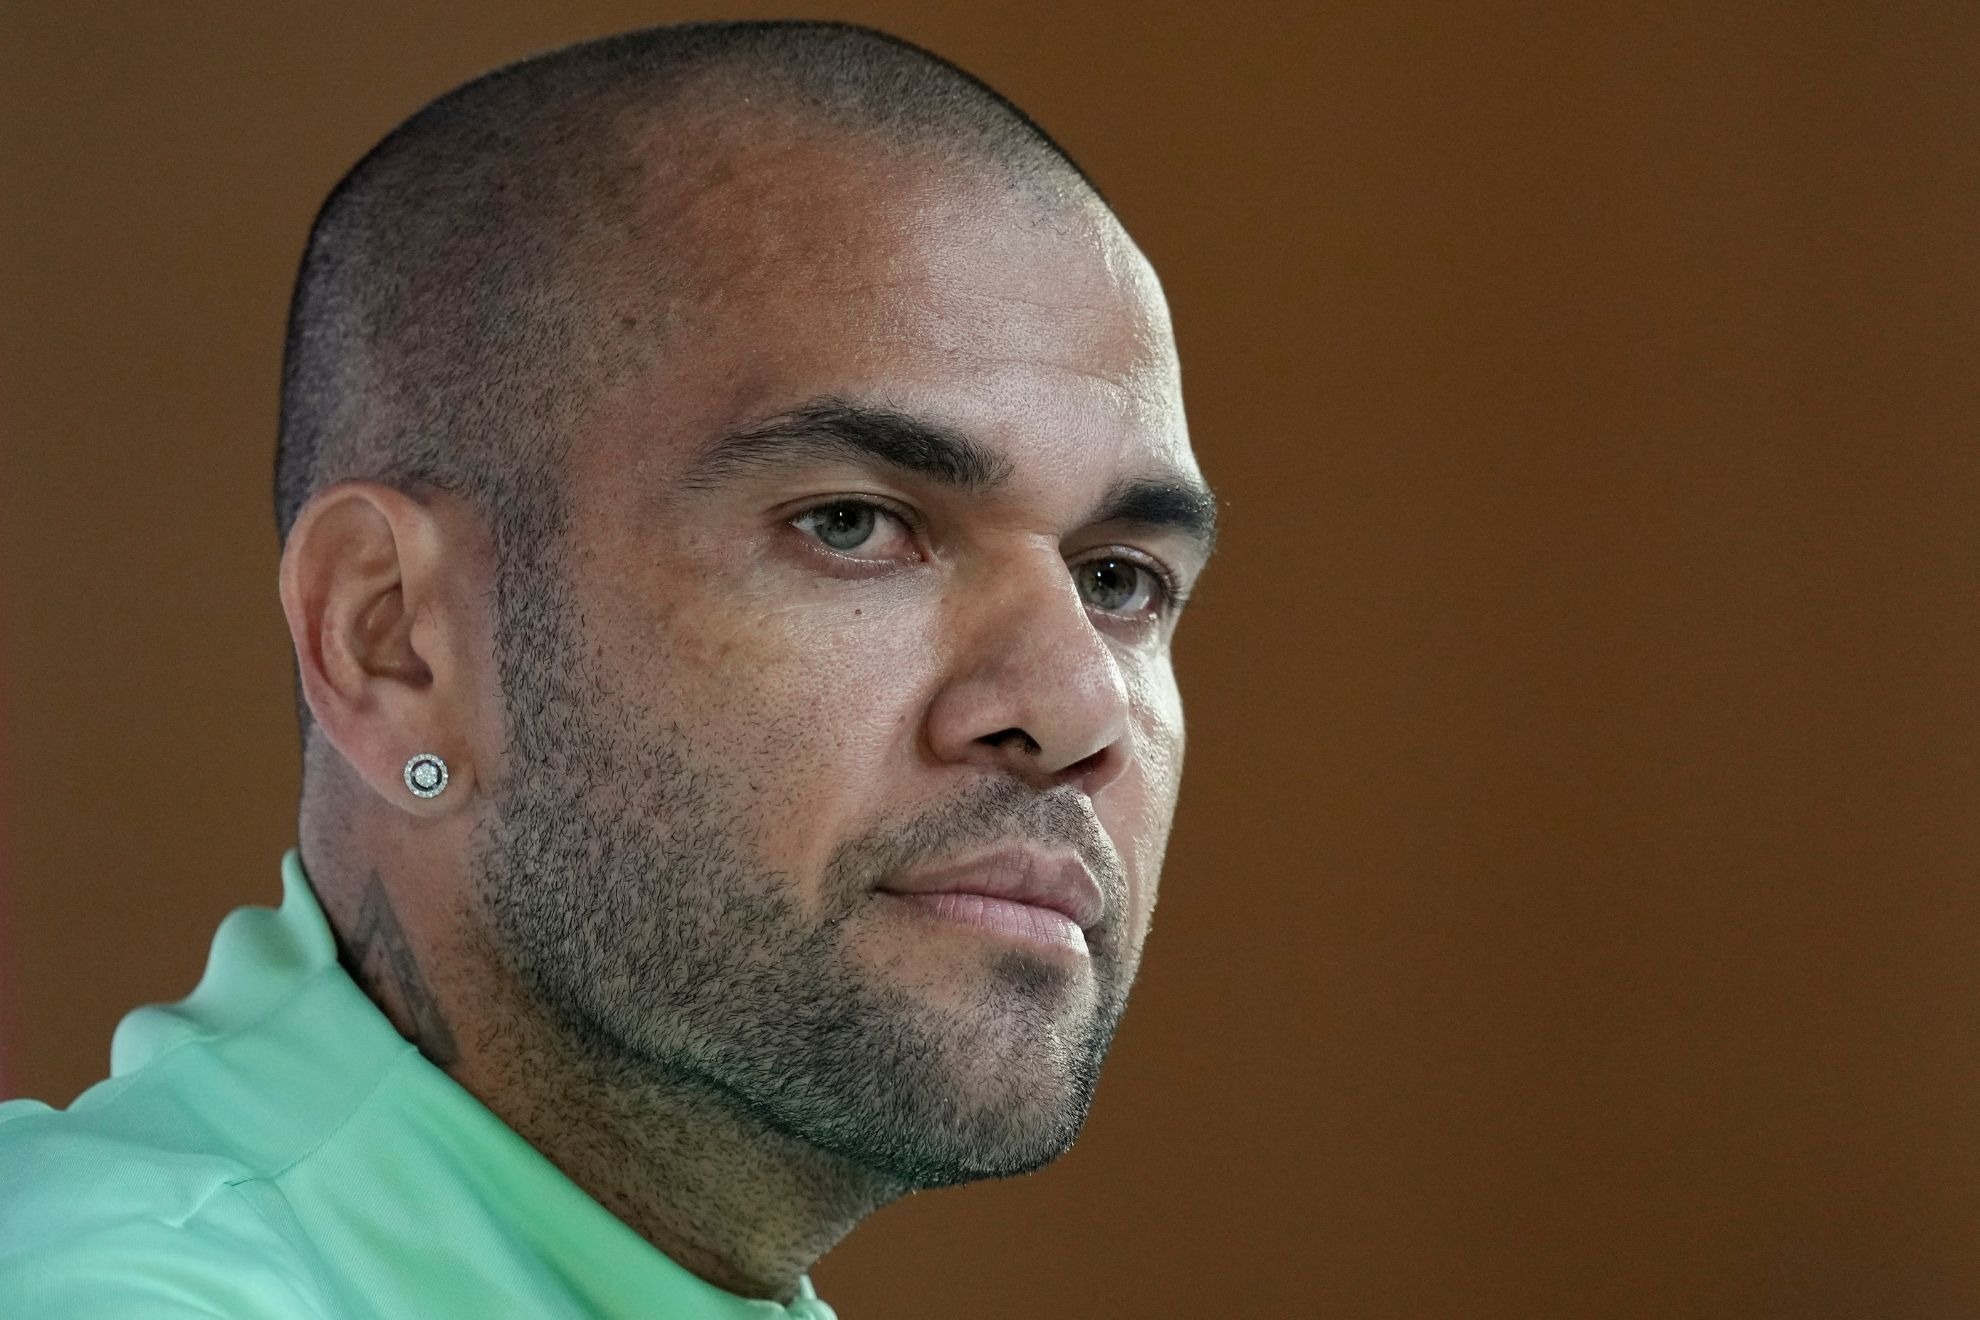 Dani Alves sort de prison : le footballeur organise "une fête jusqu'à 5h du matin"